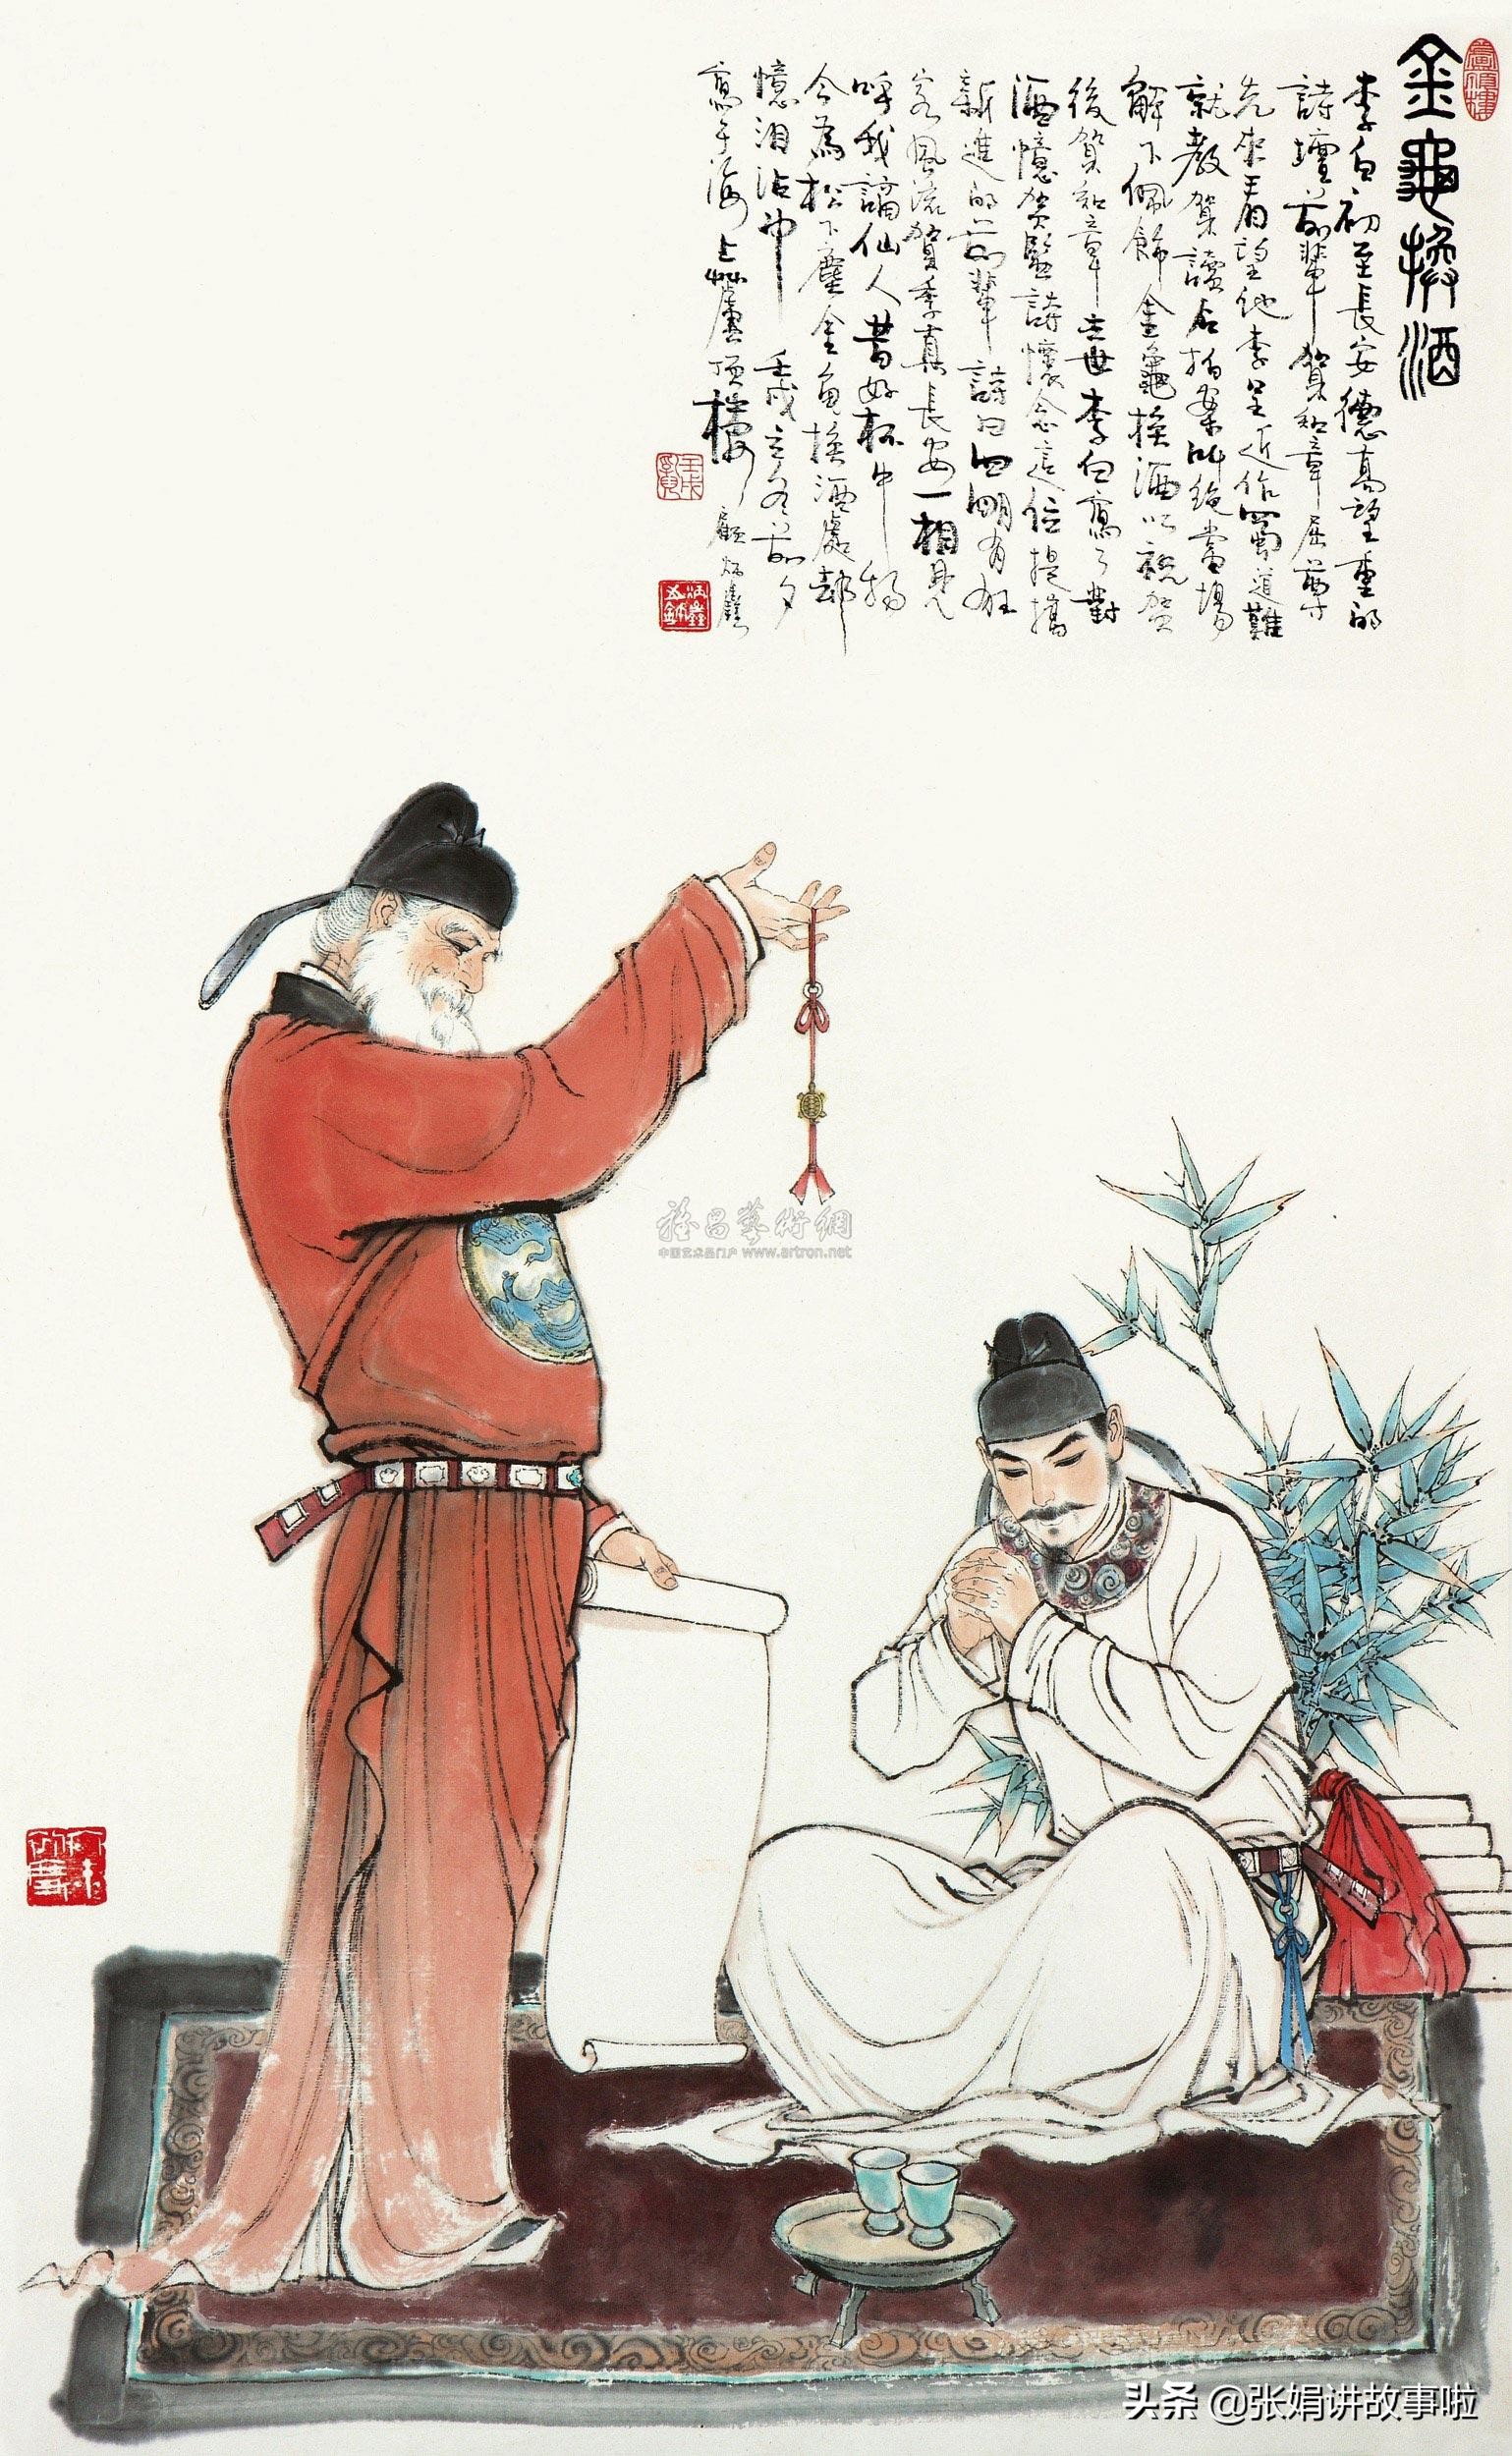 贺知章被称为“诗狂”，是“酒仙”之首。分享贺知章的诗作和轶事